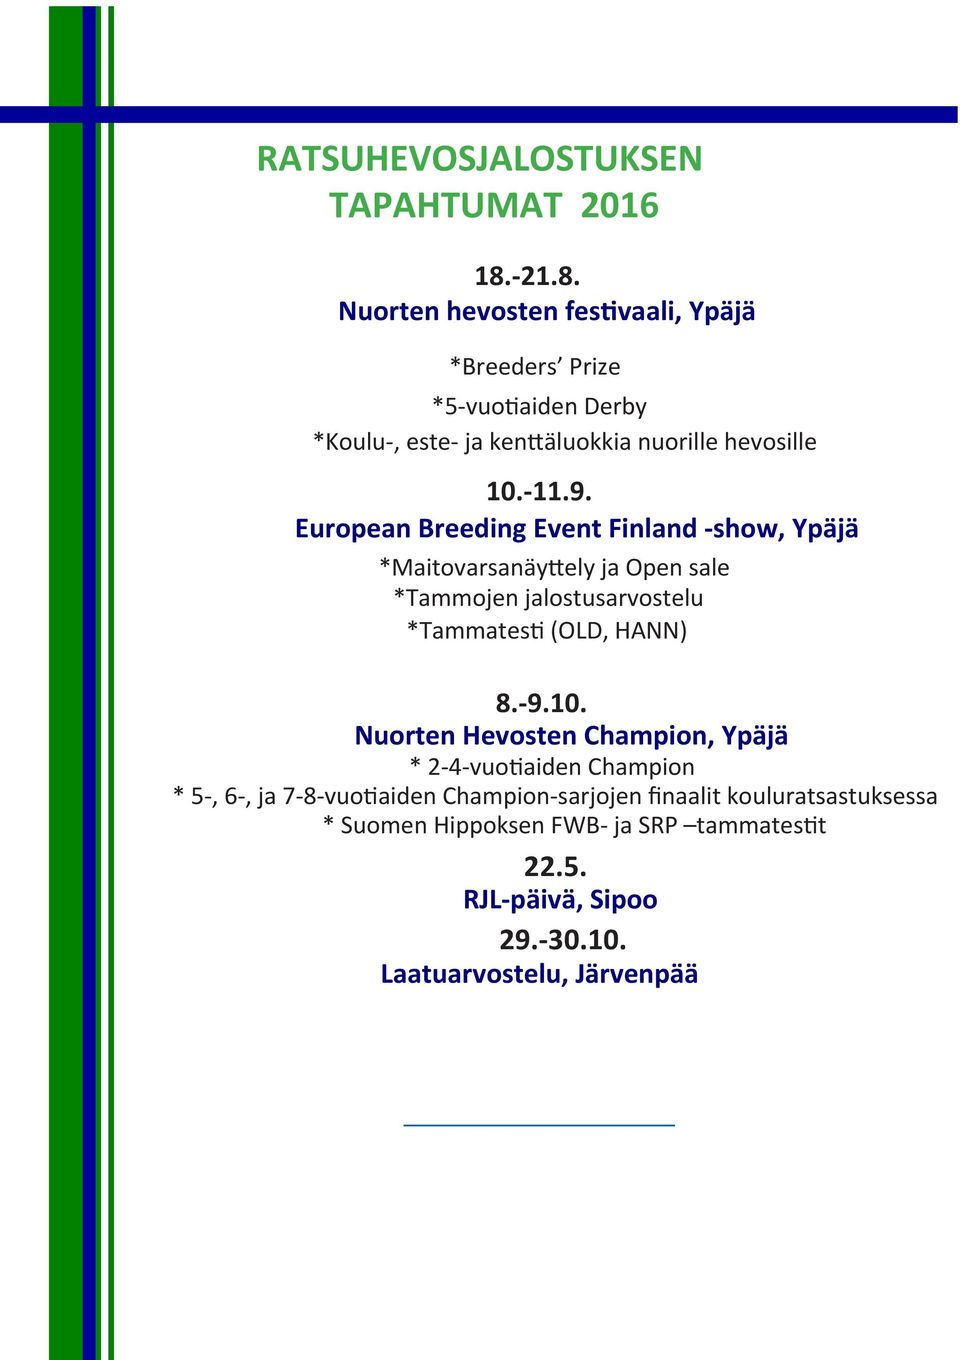 European Breeding Event Finland -show, Ypäjä *Maitovarsanäyttely ja Open sale *Tammojen jalostusarvostelu *Tammatesti (OLD, HANN) 8.-9.10.